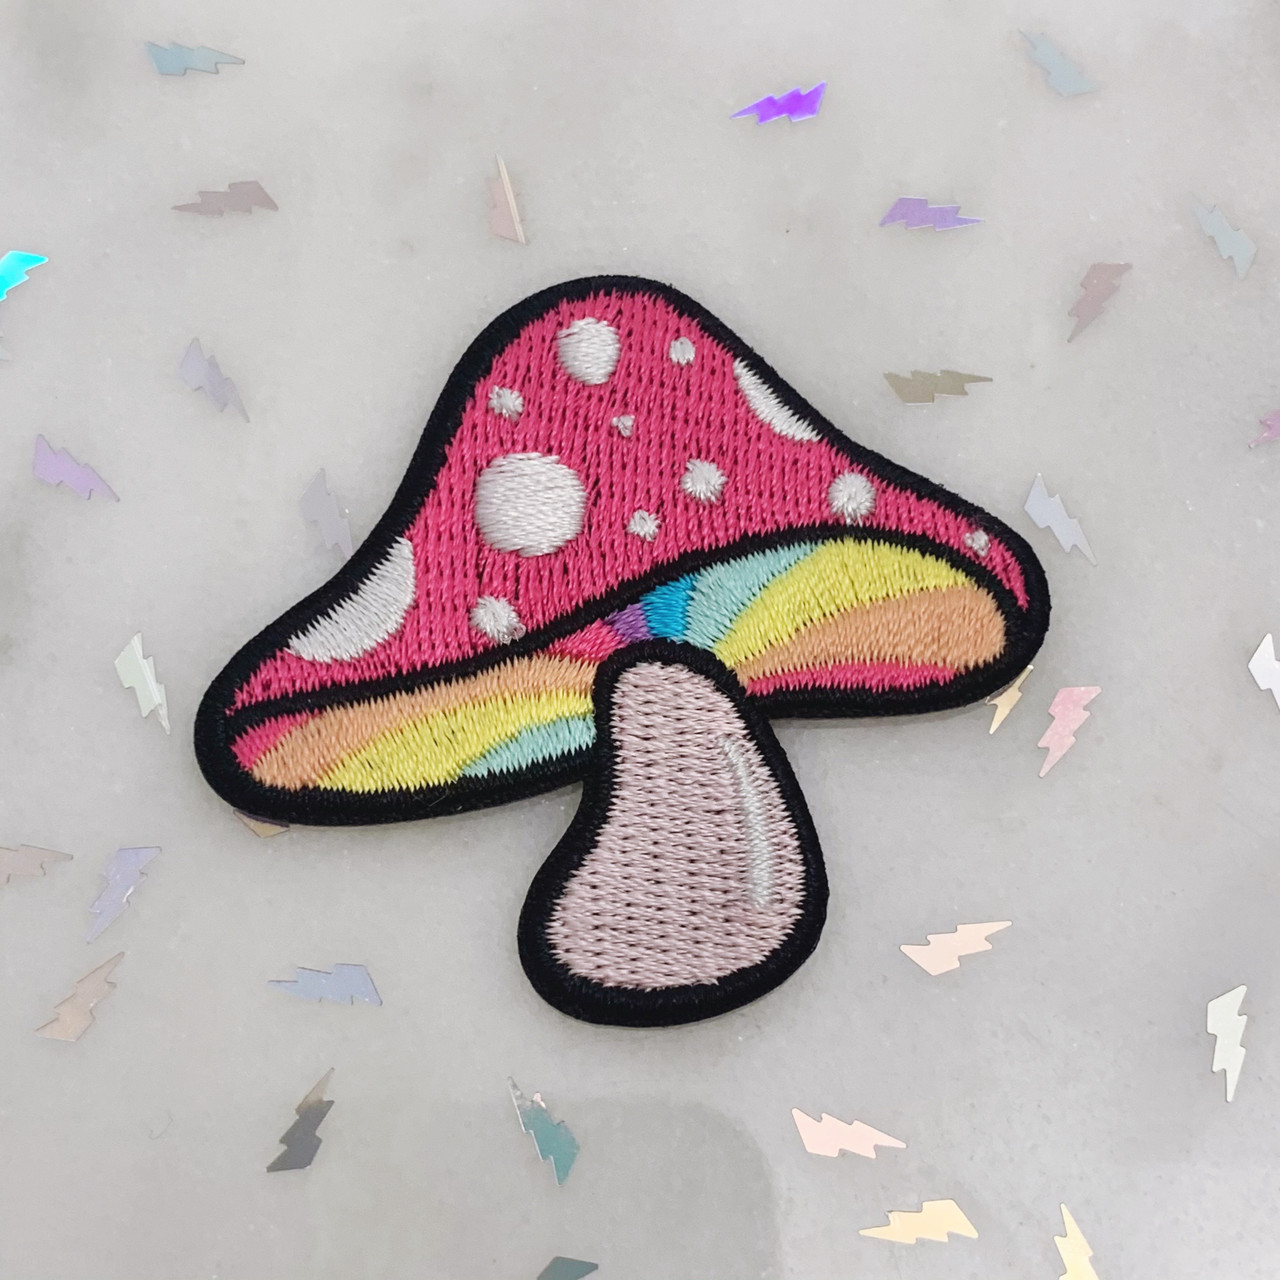 Be83 más colorido hongo Mushroom Magic Patch aplicación perchas imagen Patch DIY 